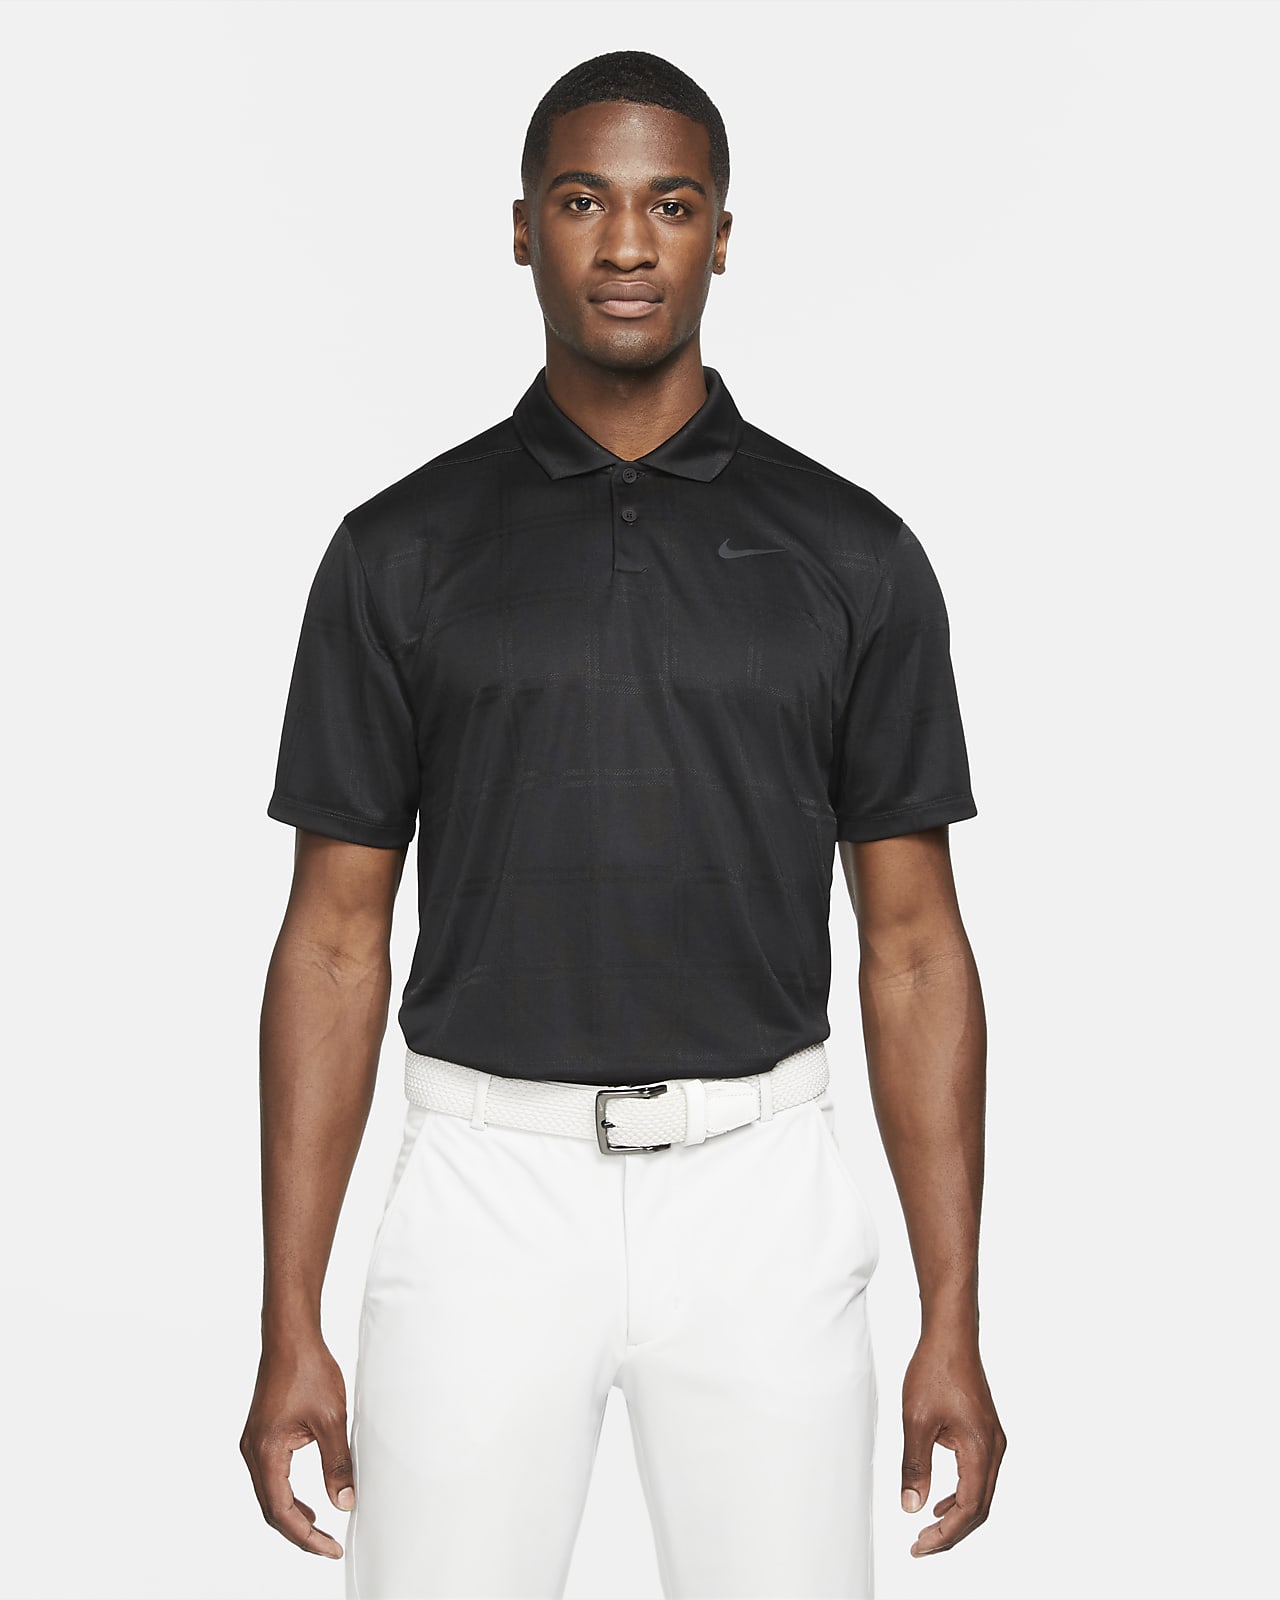 Nike Dri-FIT Vapor golfskjorte til herre